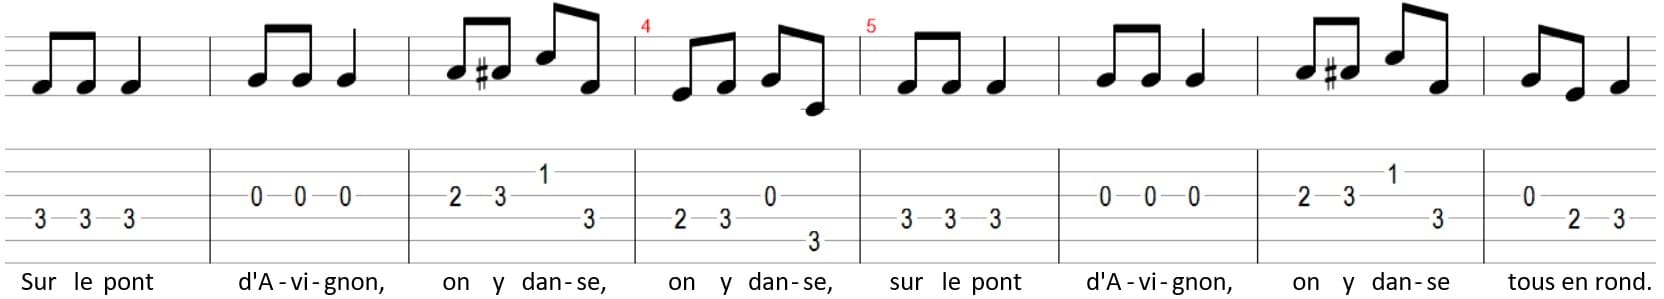 Comptine Sur le pont d'Avignon Tablature guitare partition paroles